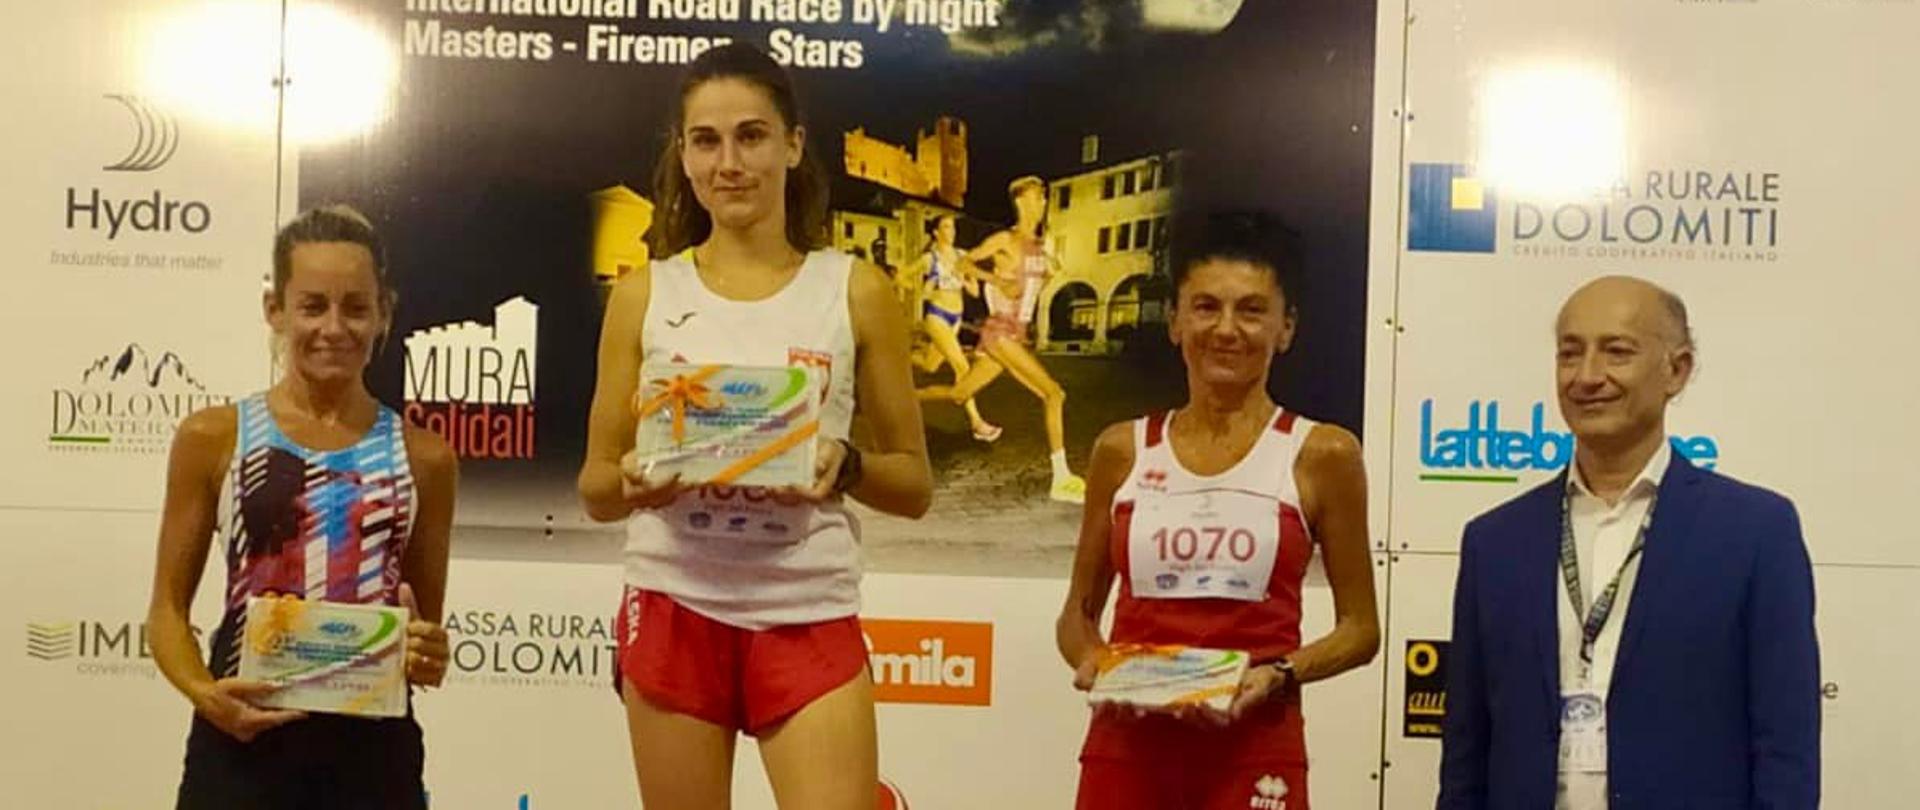 sekc. Joanna Frukacz z Komendy Miejskiej PSP w Bielsku-Białej zwyciężyła bezapelacyjnie rywalizację wśród kobiet z czasem 38 min 39 sekund!!! na 10 km. 